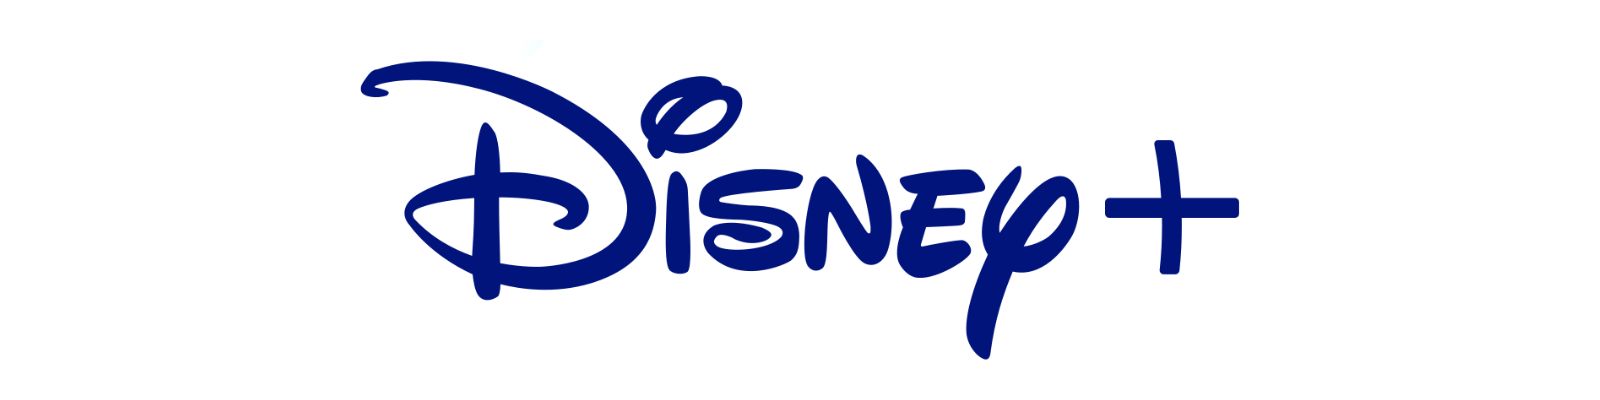 Disney+ é confiável? Não assine antes de Ler!